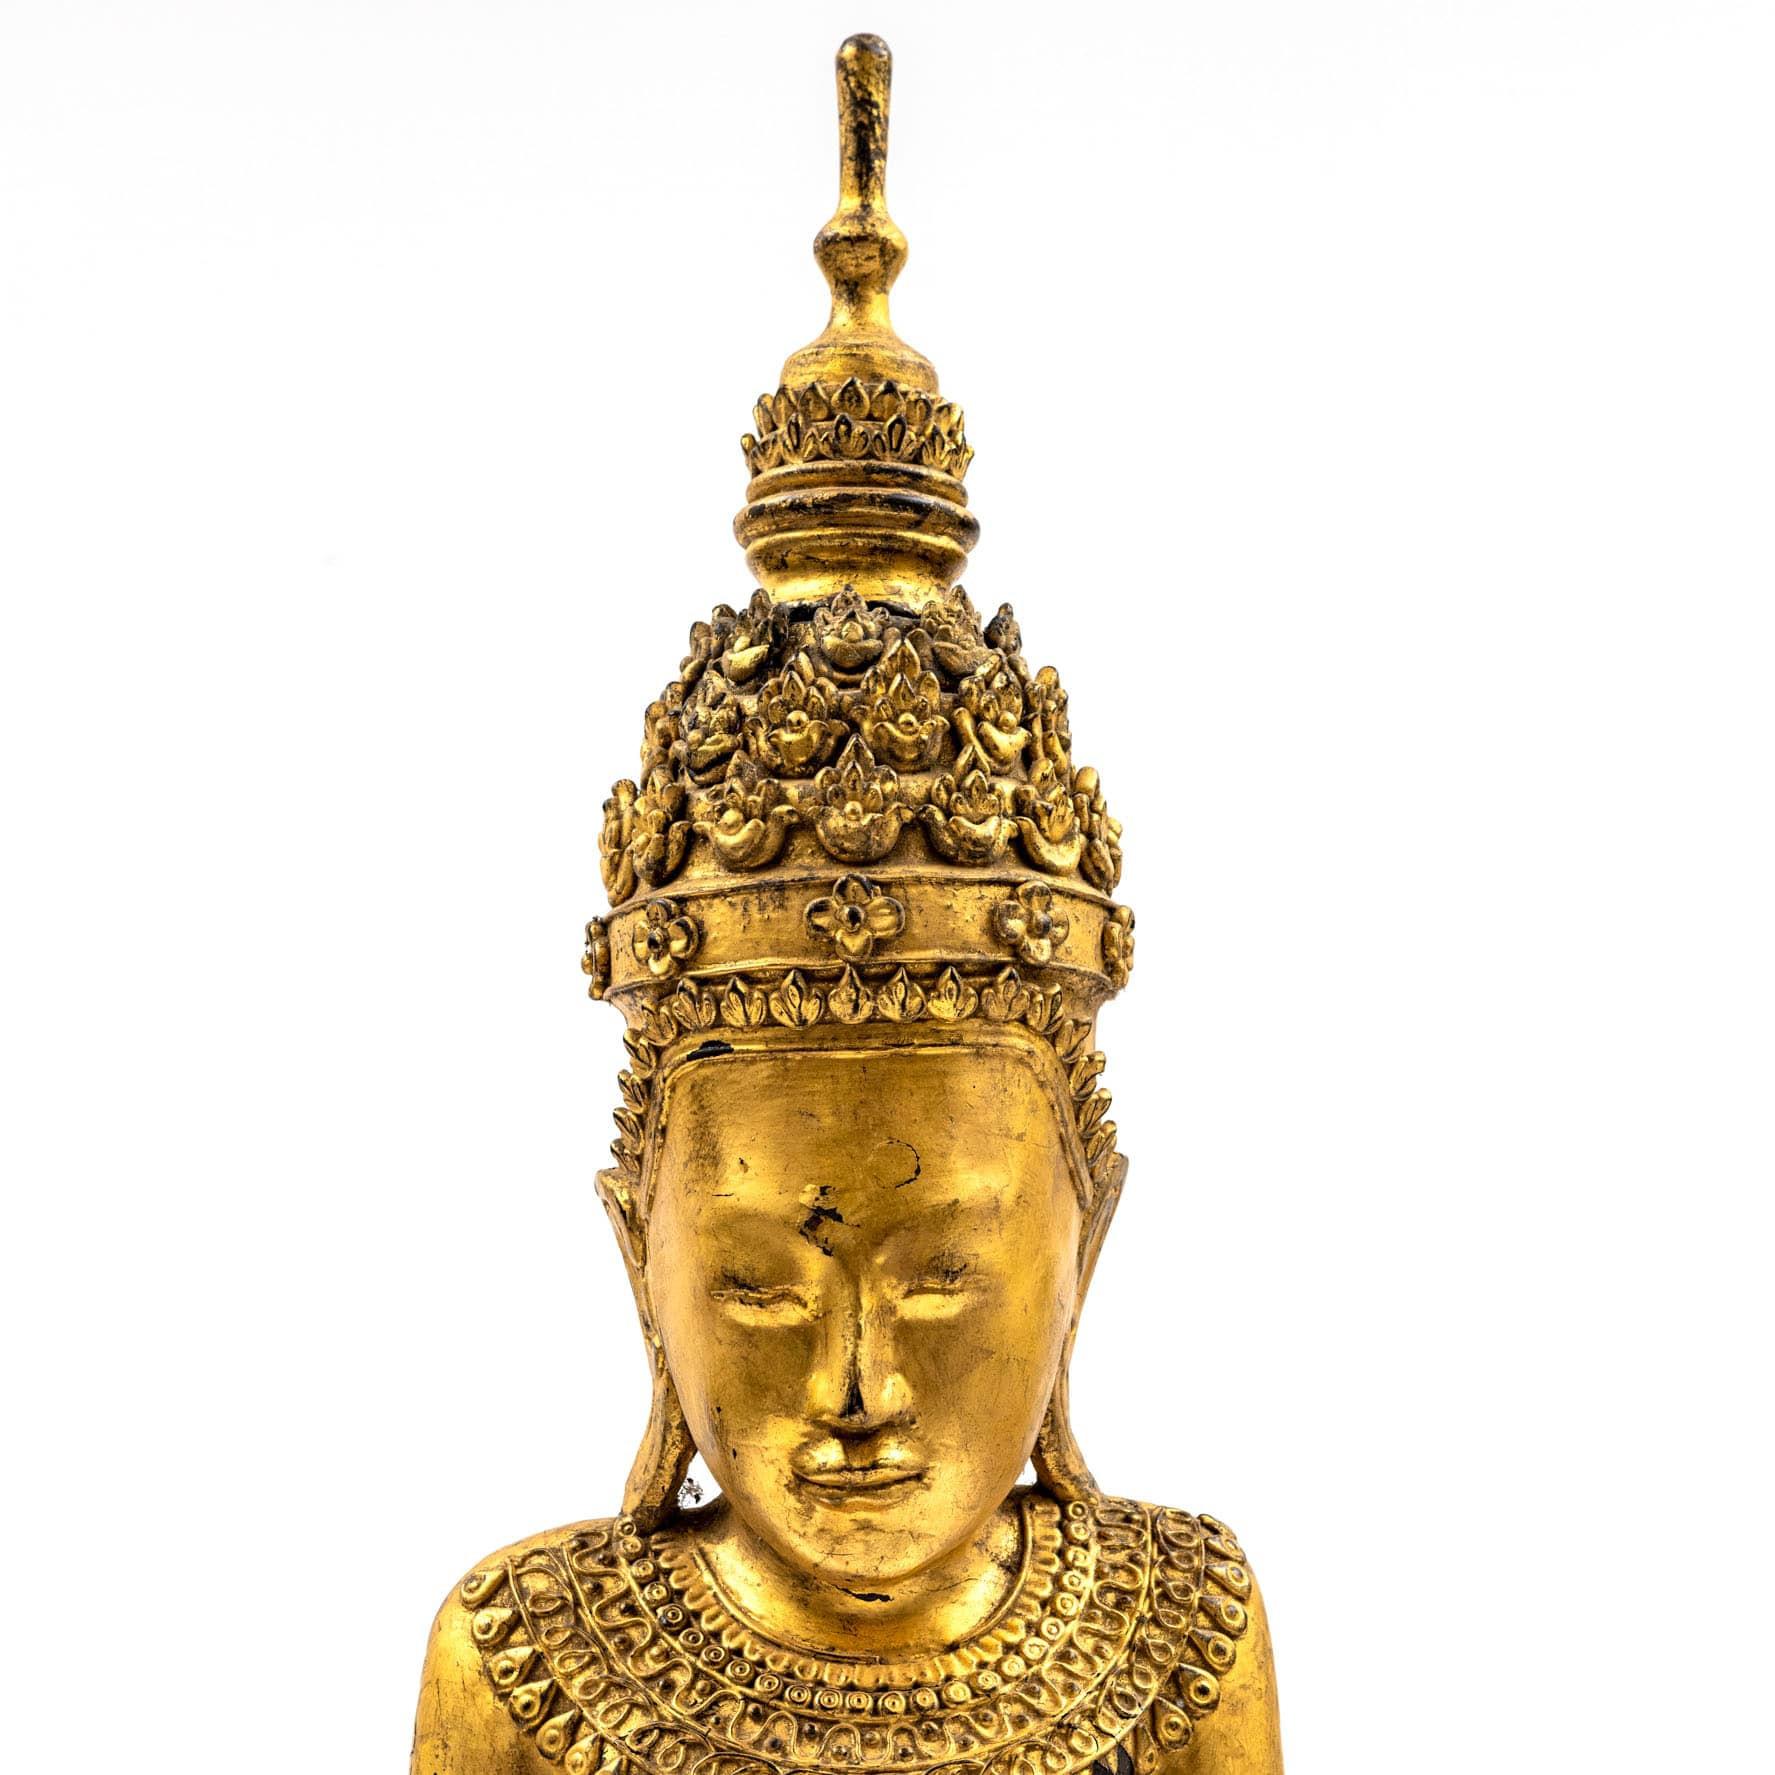 Burmese Crown Buddha, from Temple in Burma